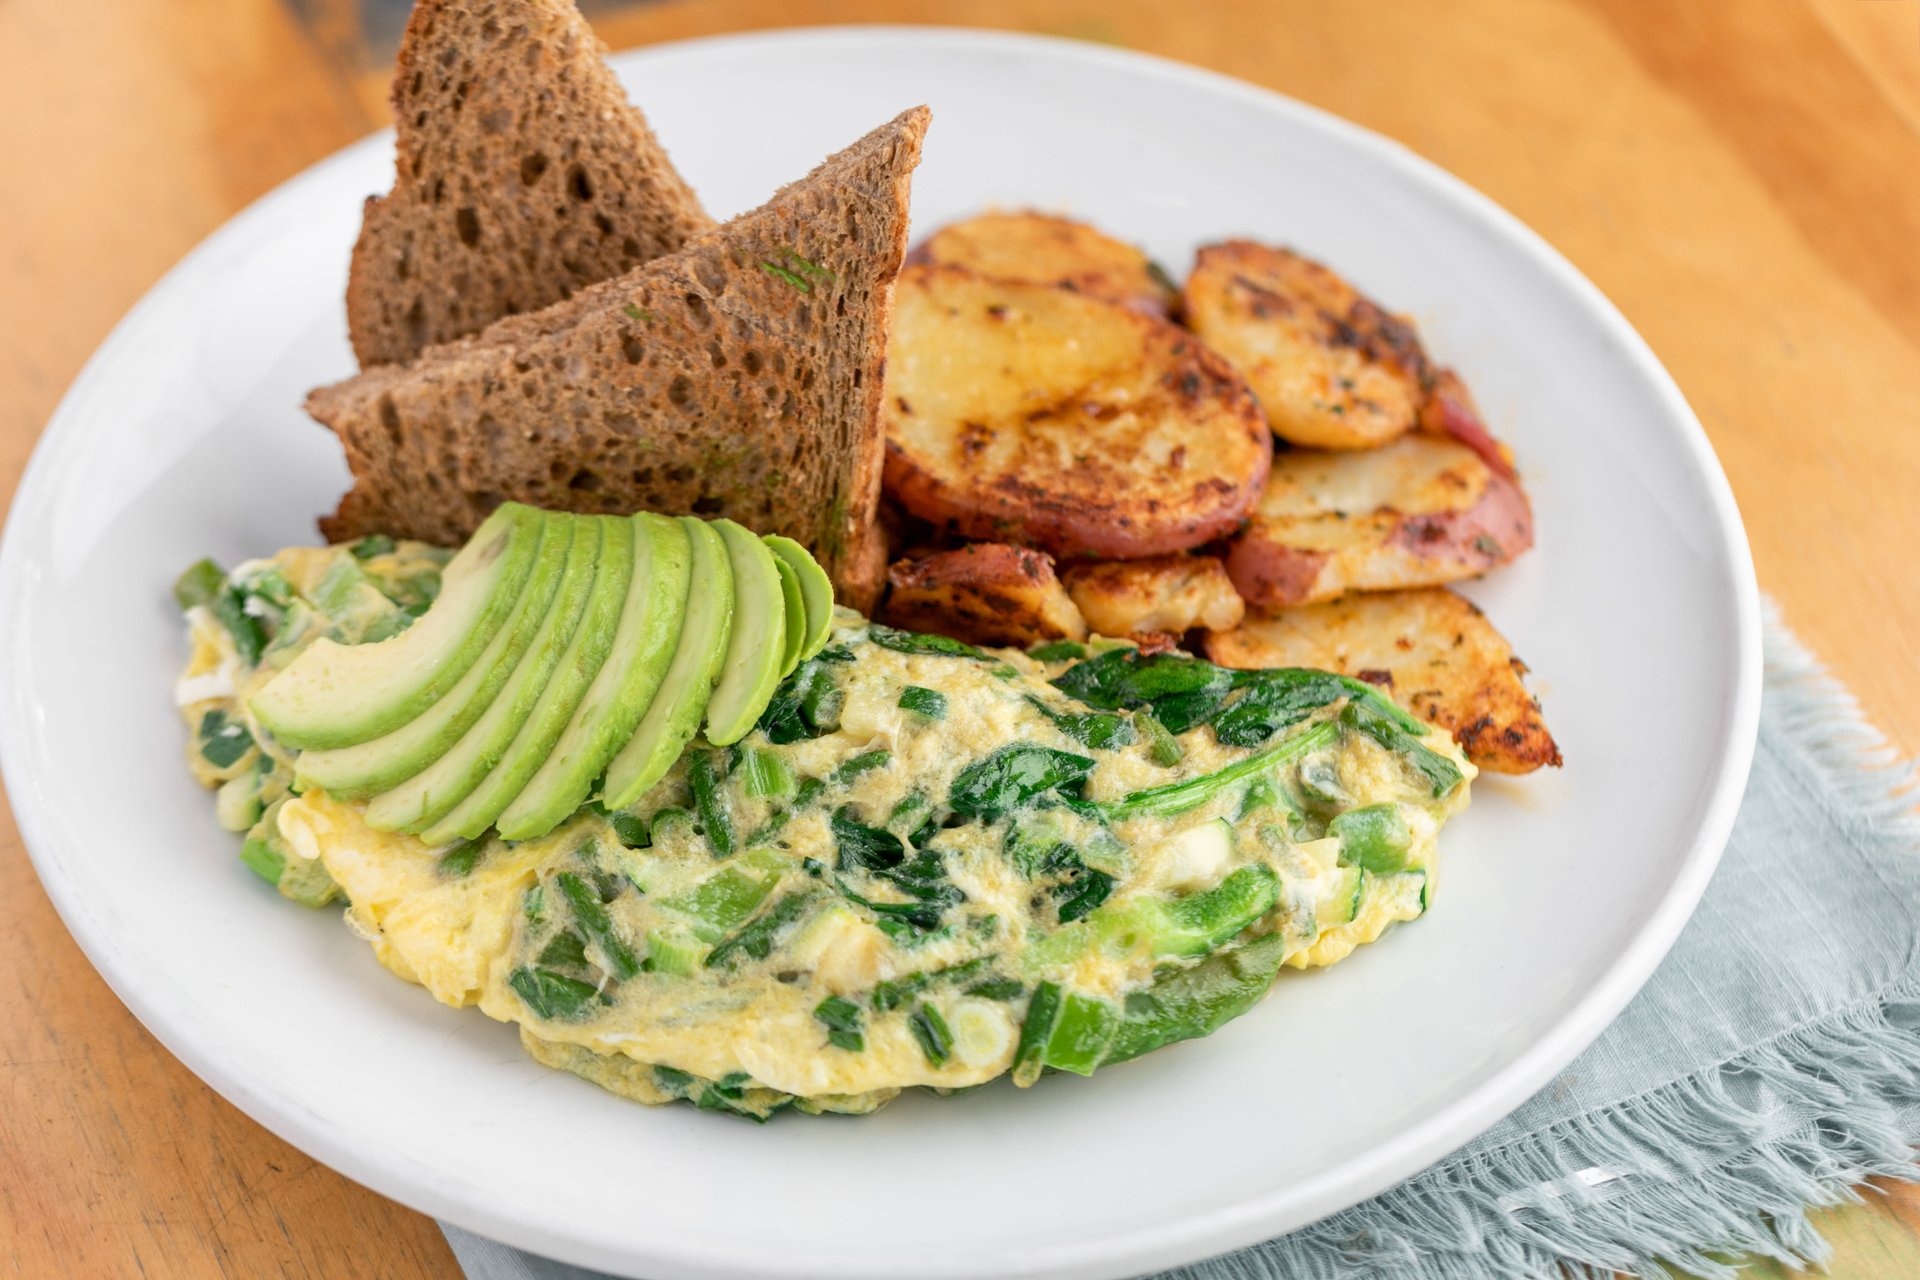 Green Omelette (Zero Egg Green Omelette) - Pancake Alternative